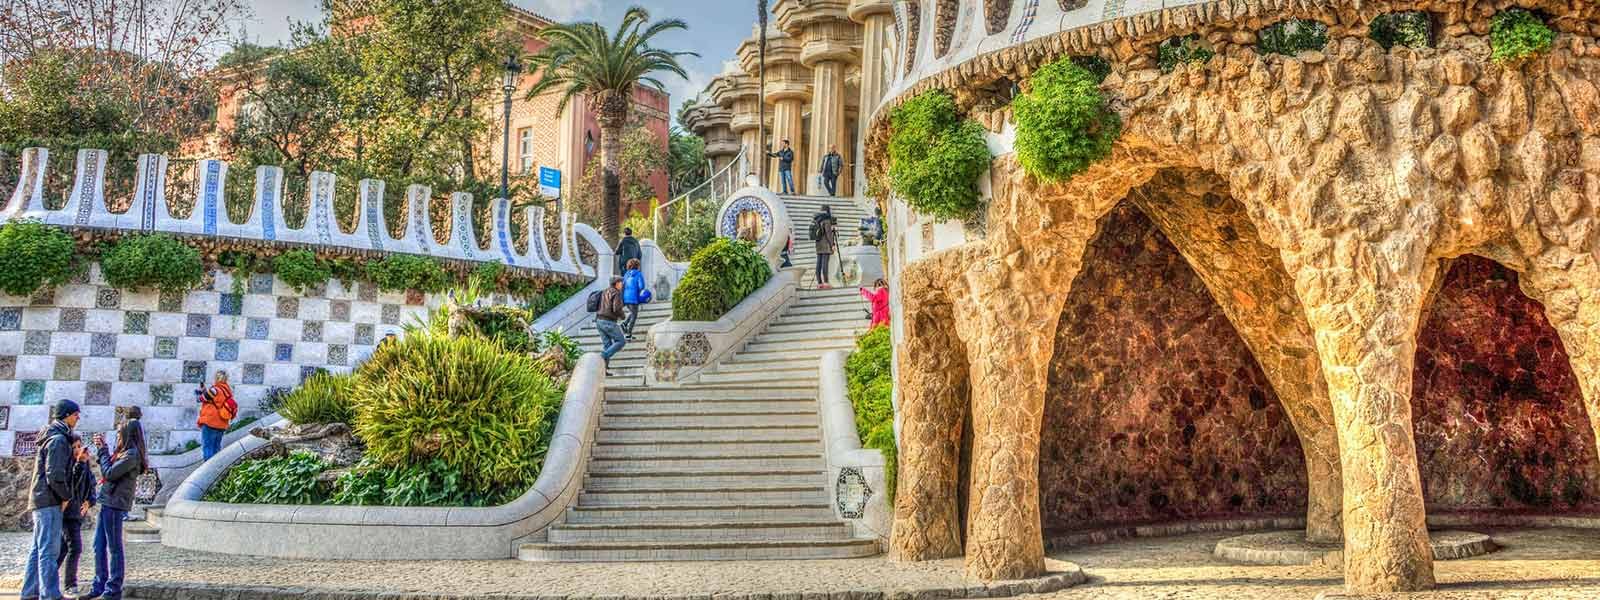 Een deel van Park Guell van Gaudi in Barcelona